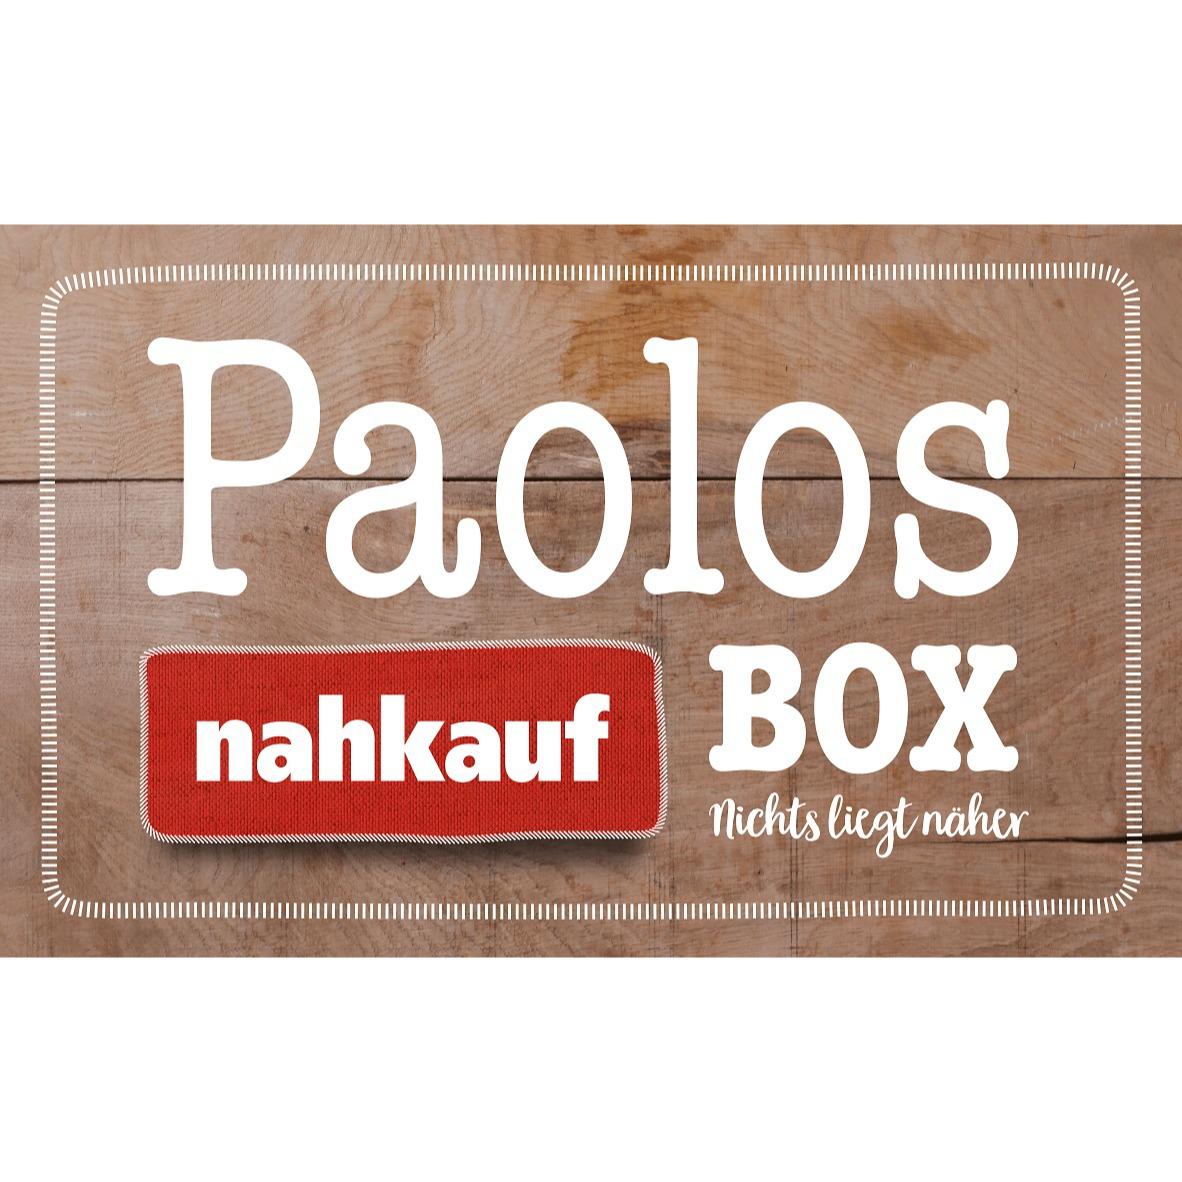 Paolo's nahkauf Box in Wildsachsen Stadt Hofheim am Taunus - Logo